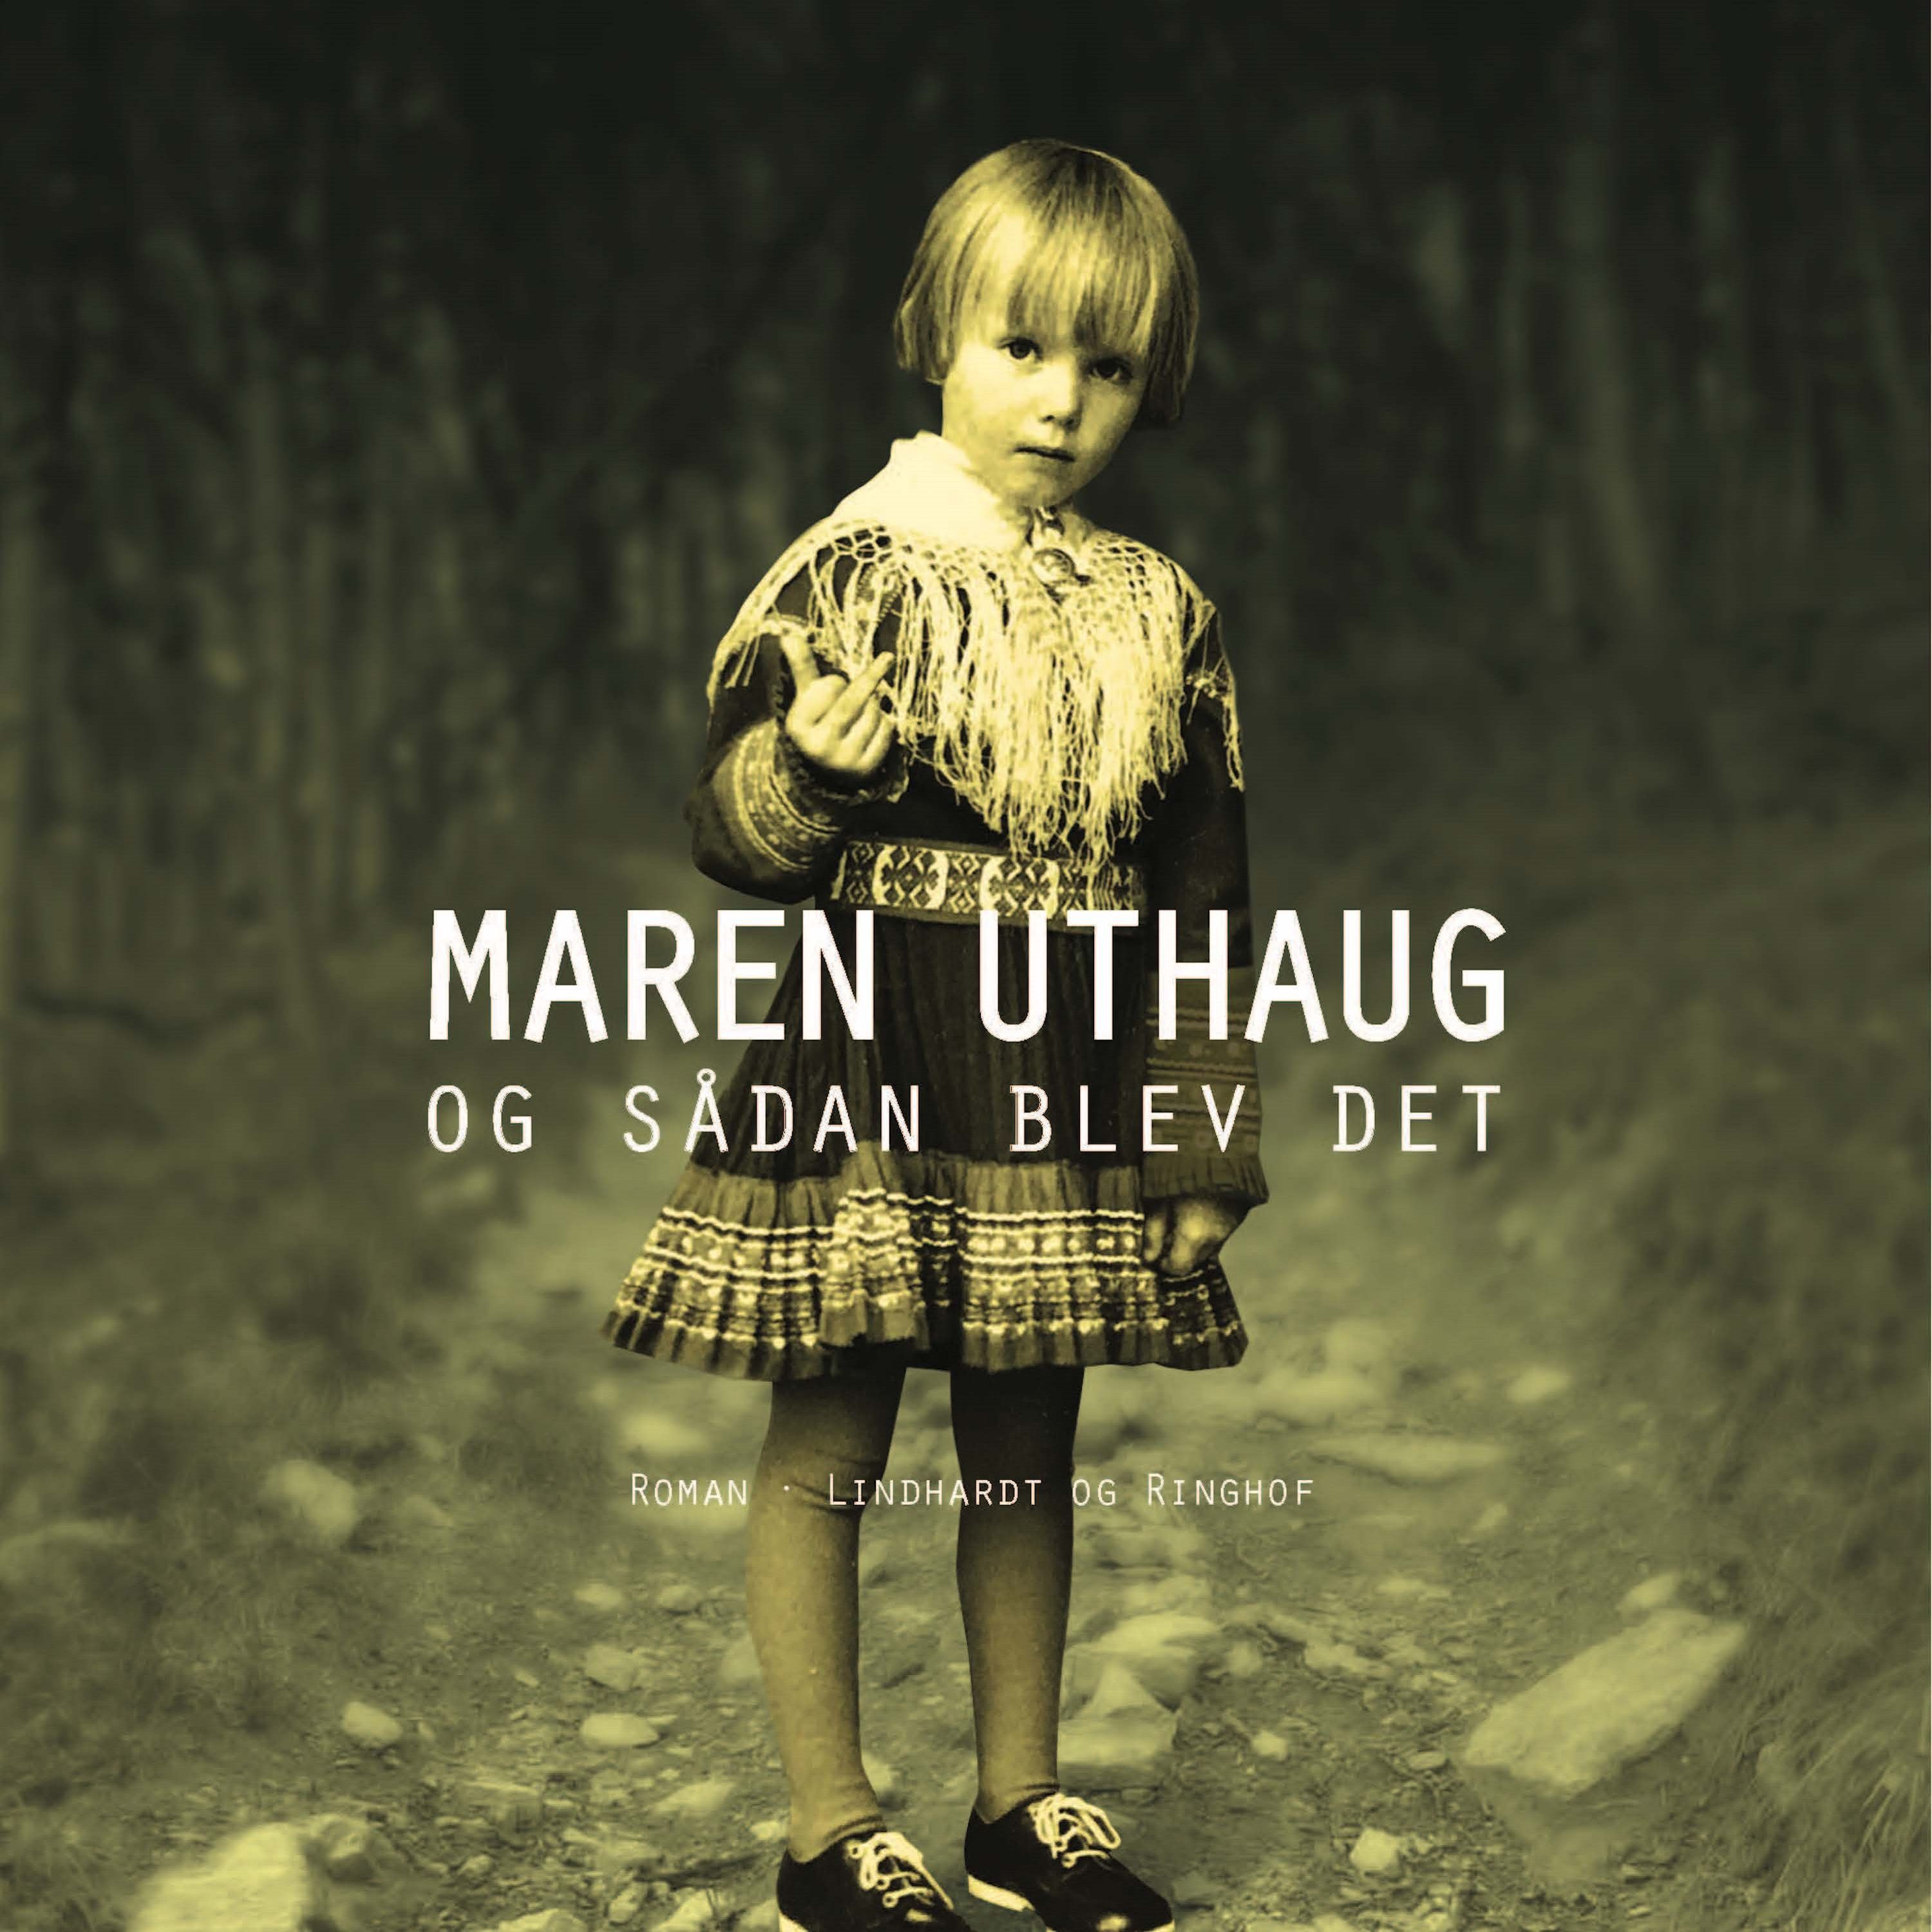 Og sådan blev det, audiobook by Maren Uthaug